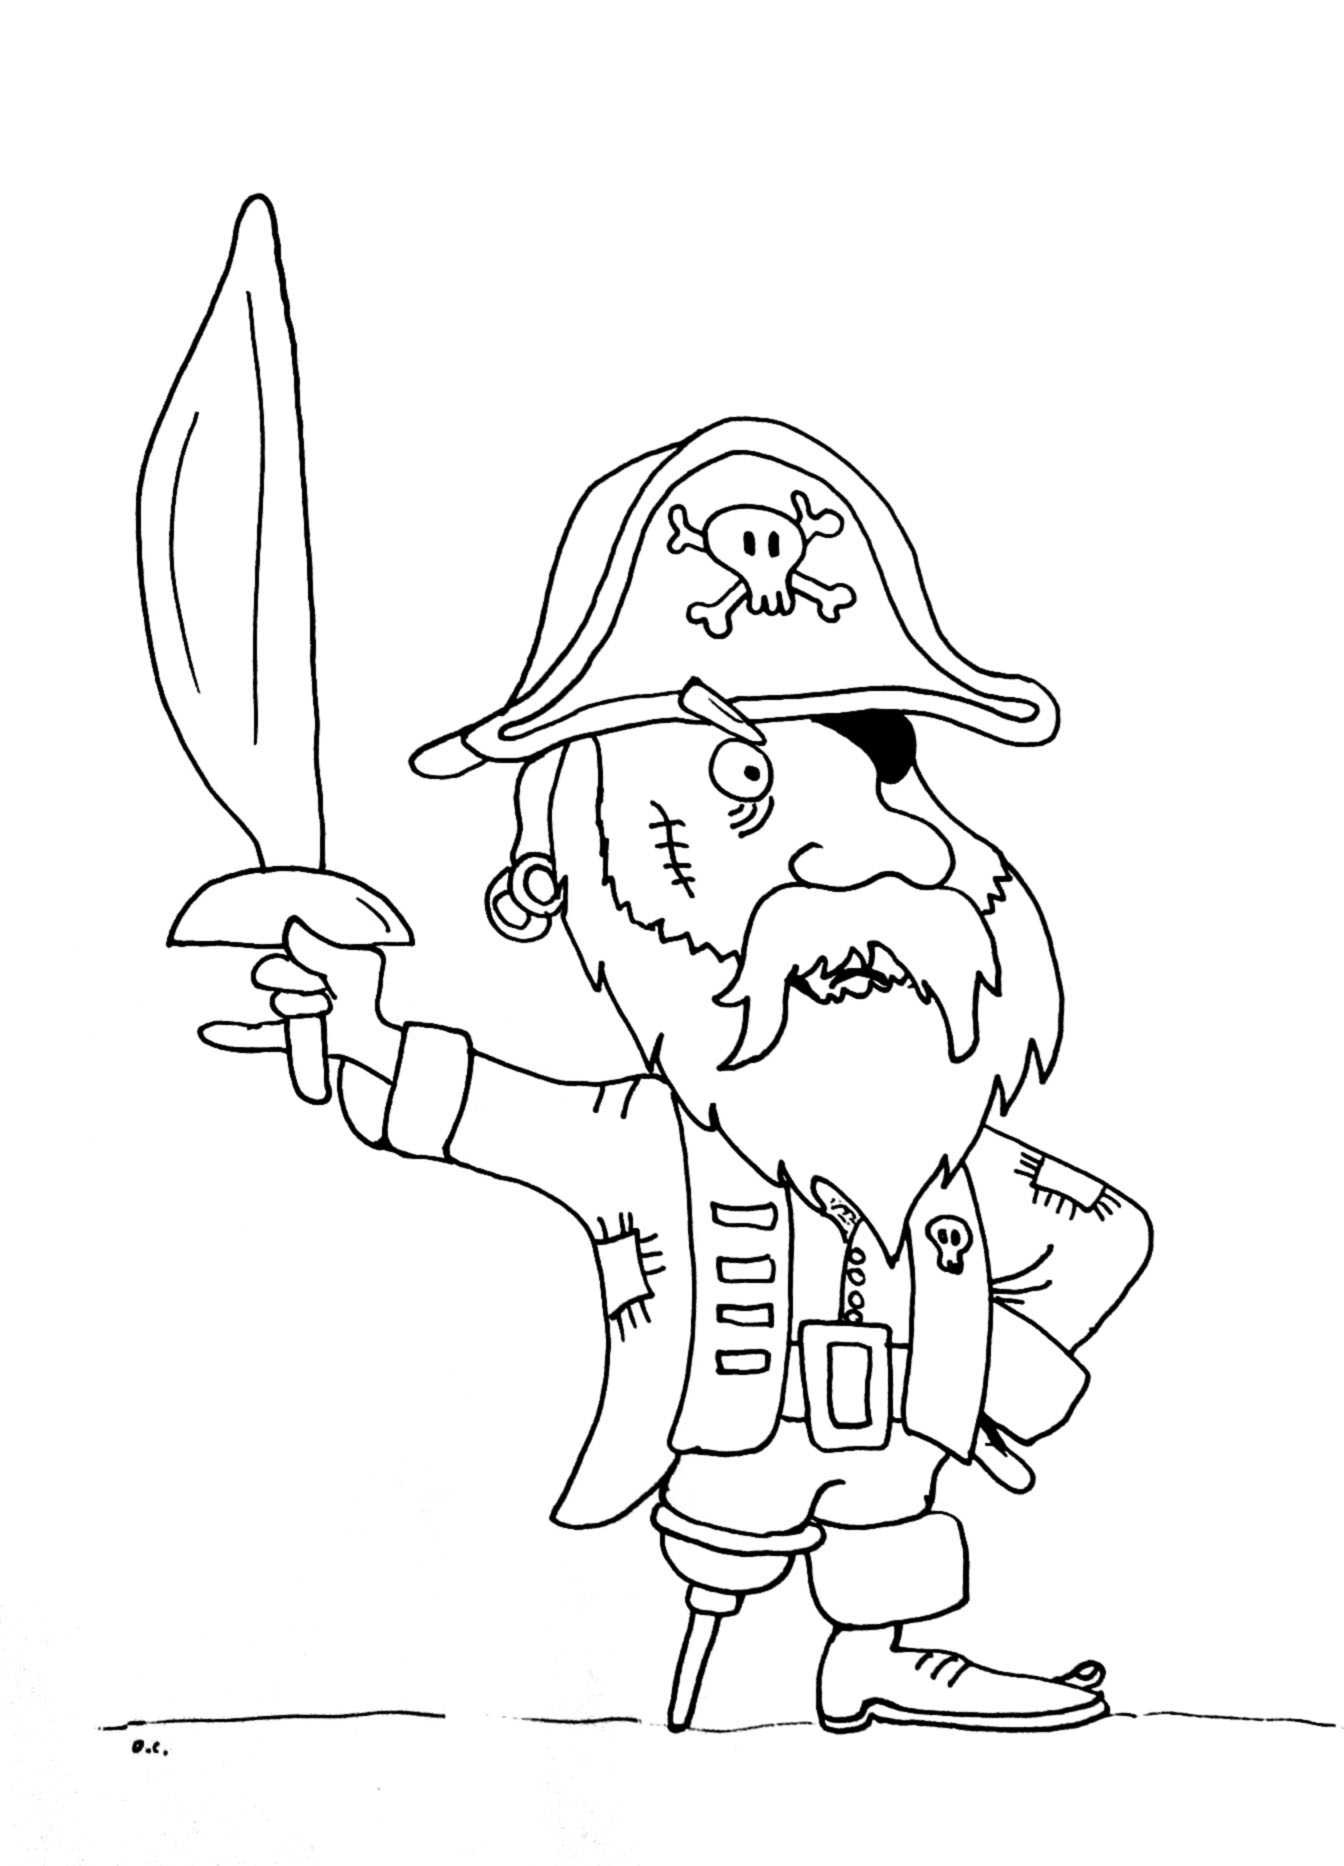 Coloriage d'un drôle de pirate barbu avec jambe en bois !